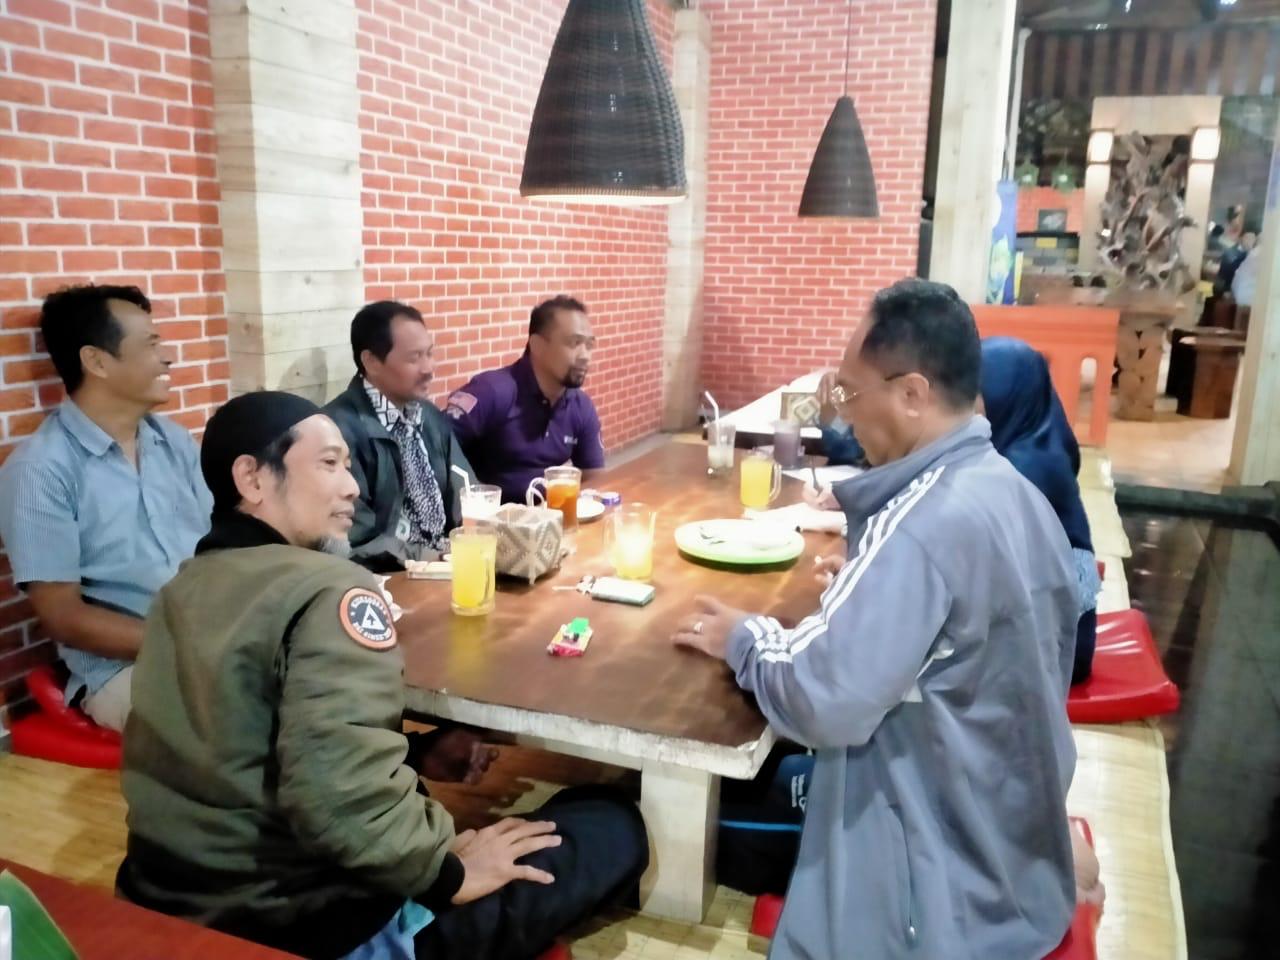 Jelang Musda, 5 DPC PAN Se-Kota Malang Pertanyakan Kiprah dan Kinerja Anggota DPRD PAN